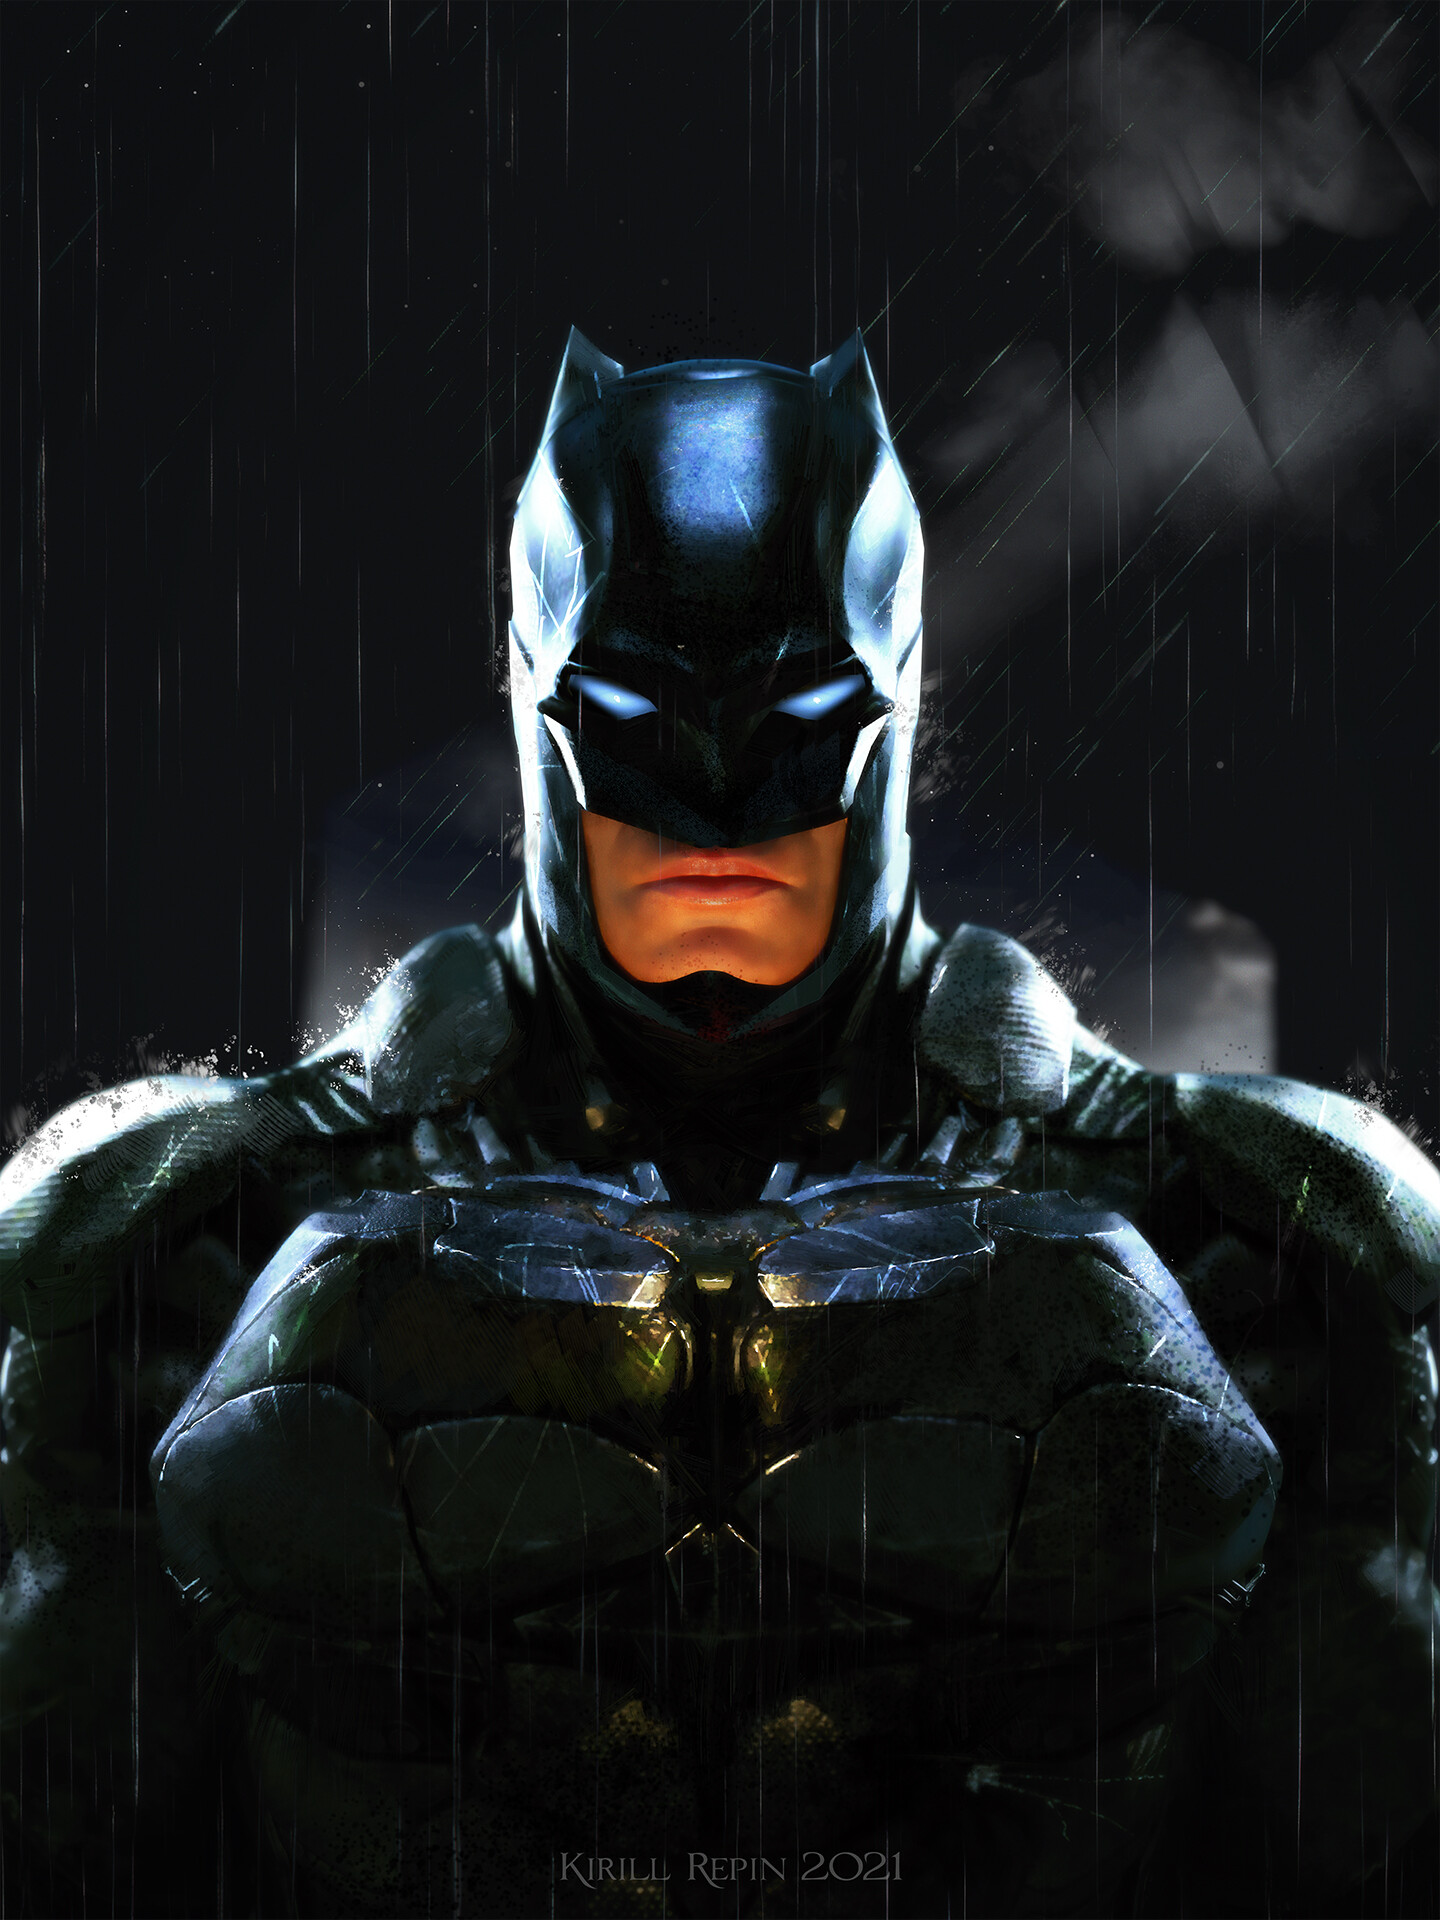 General 1440x1920 Batman artwork ArtStation Kirill Repin rain 2021 (year) superhero